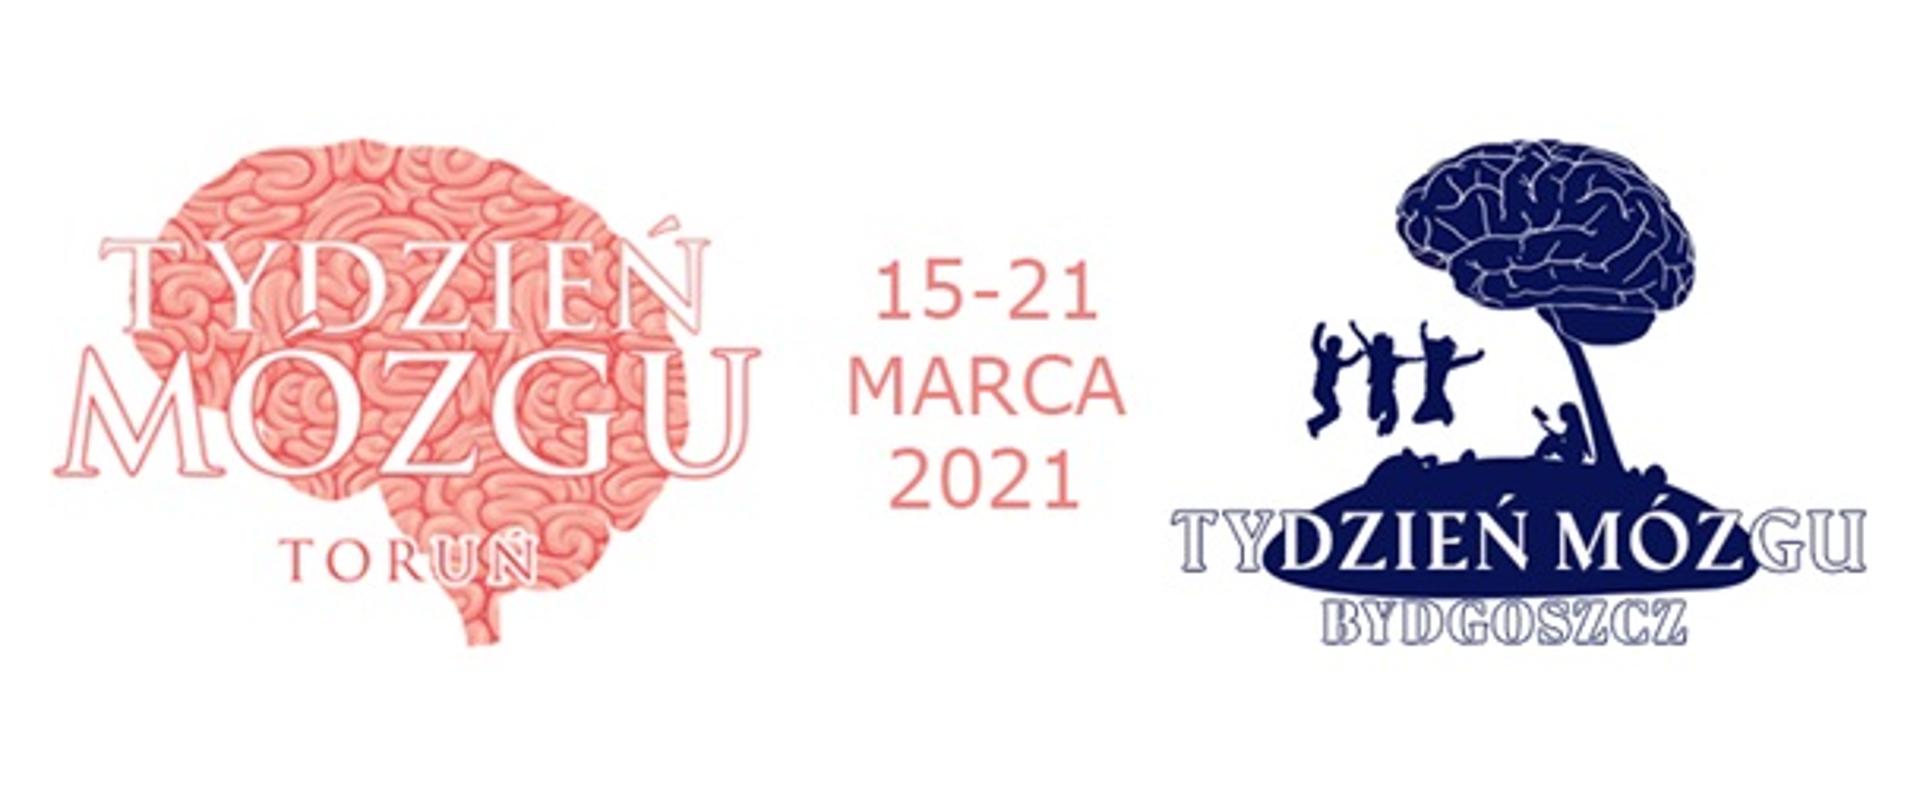 Grafik mózgu z tekstem 15-21 marca 2021 Tydzień Mózgu Toruń i Bydgoszcz